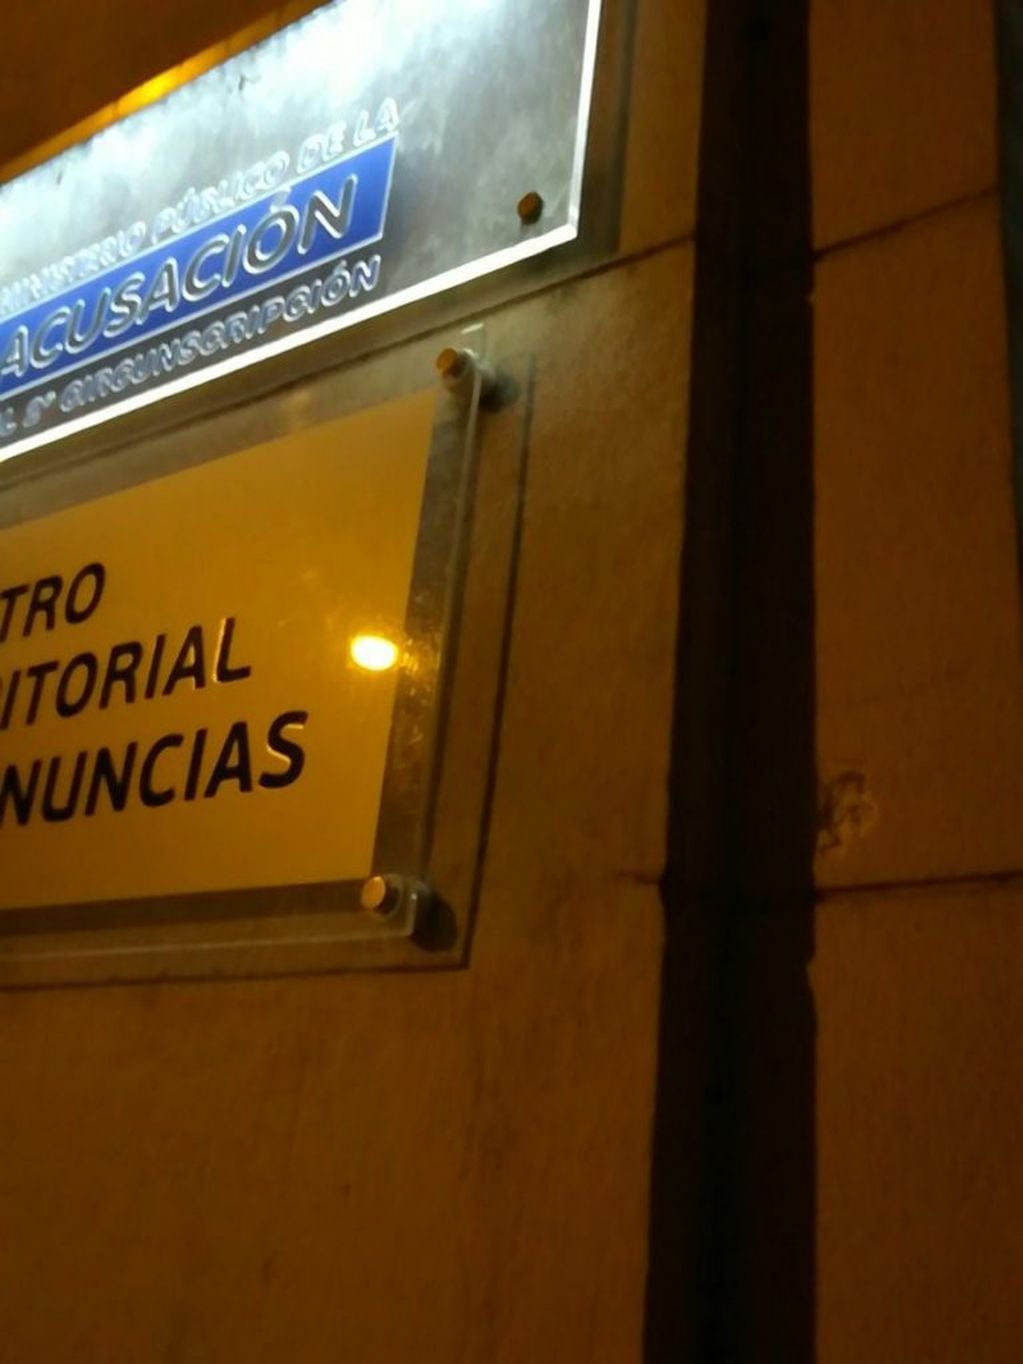 Balearon la sede de la Fiscalía Regional de Rosario en Montevideo 1968. (@pckassabian)